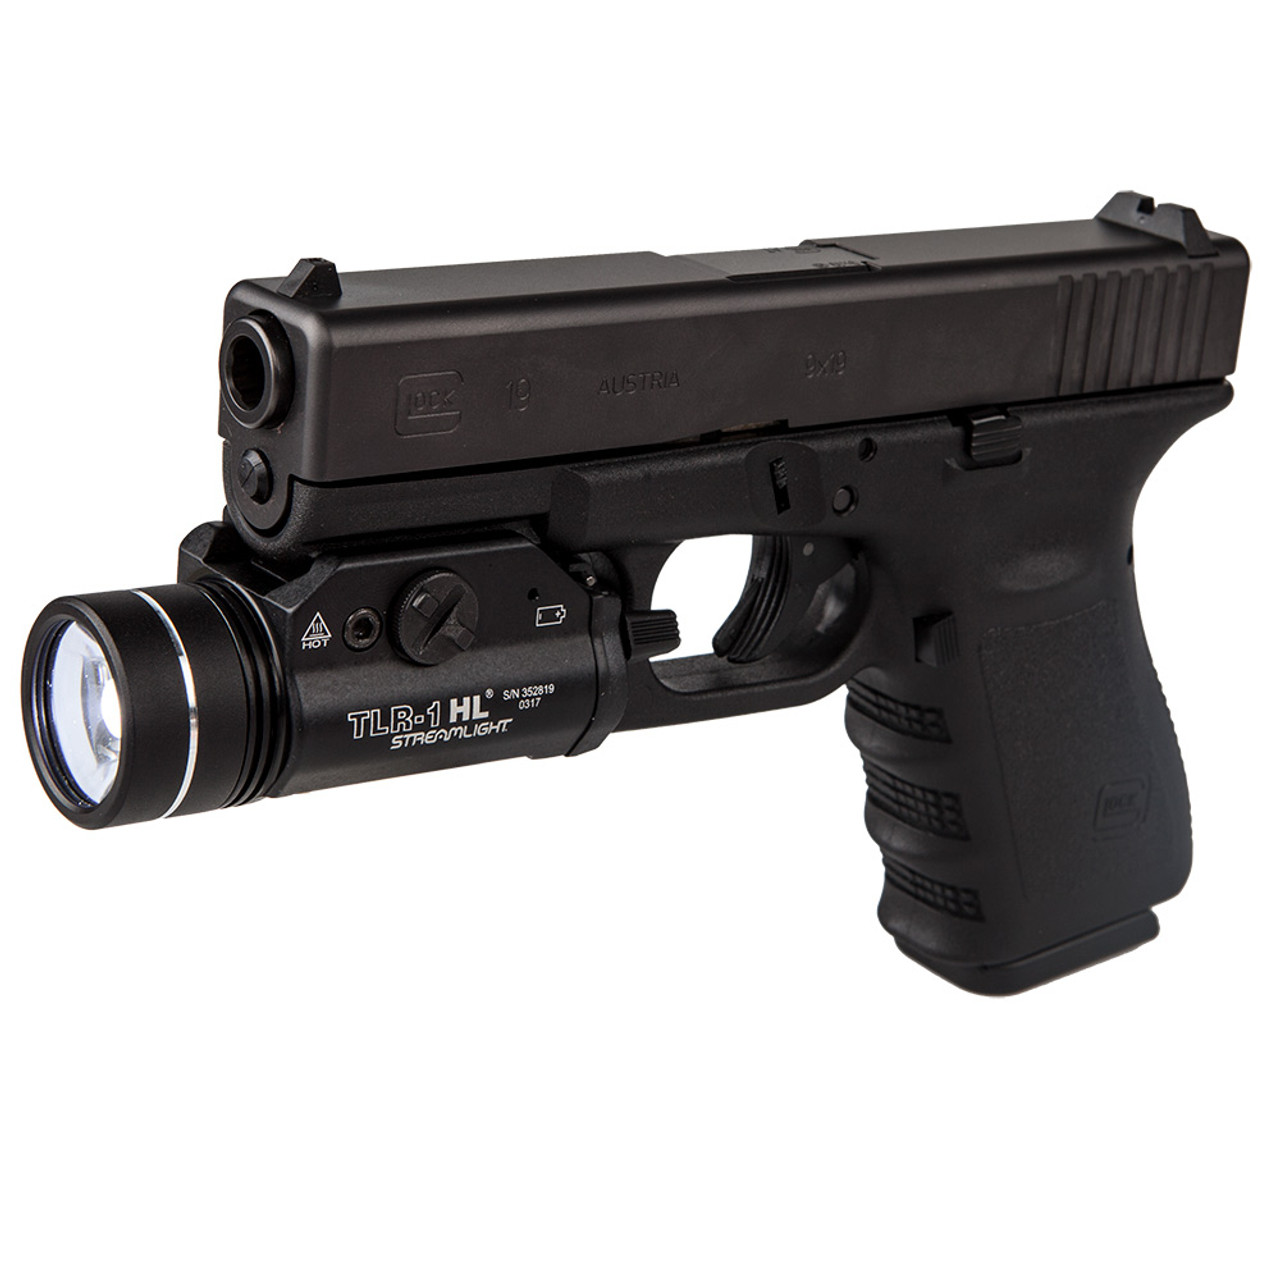 Streamlight 69260 TLR-1 HL Tactical Weapon Mount Light for sale online 